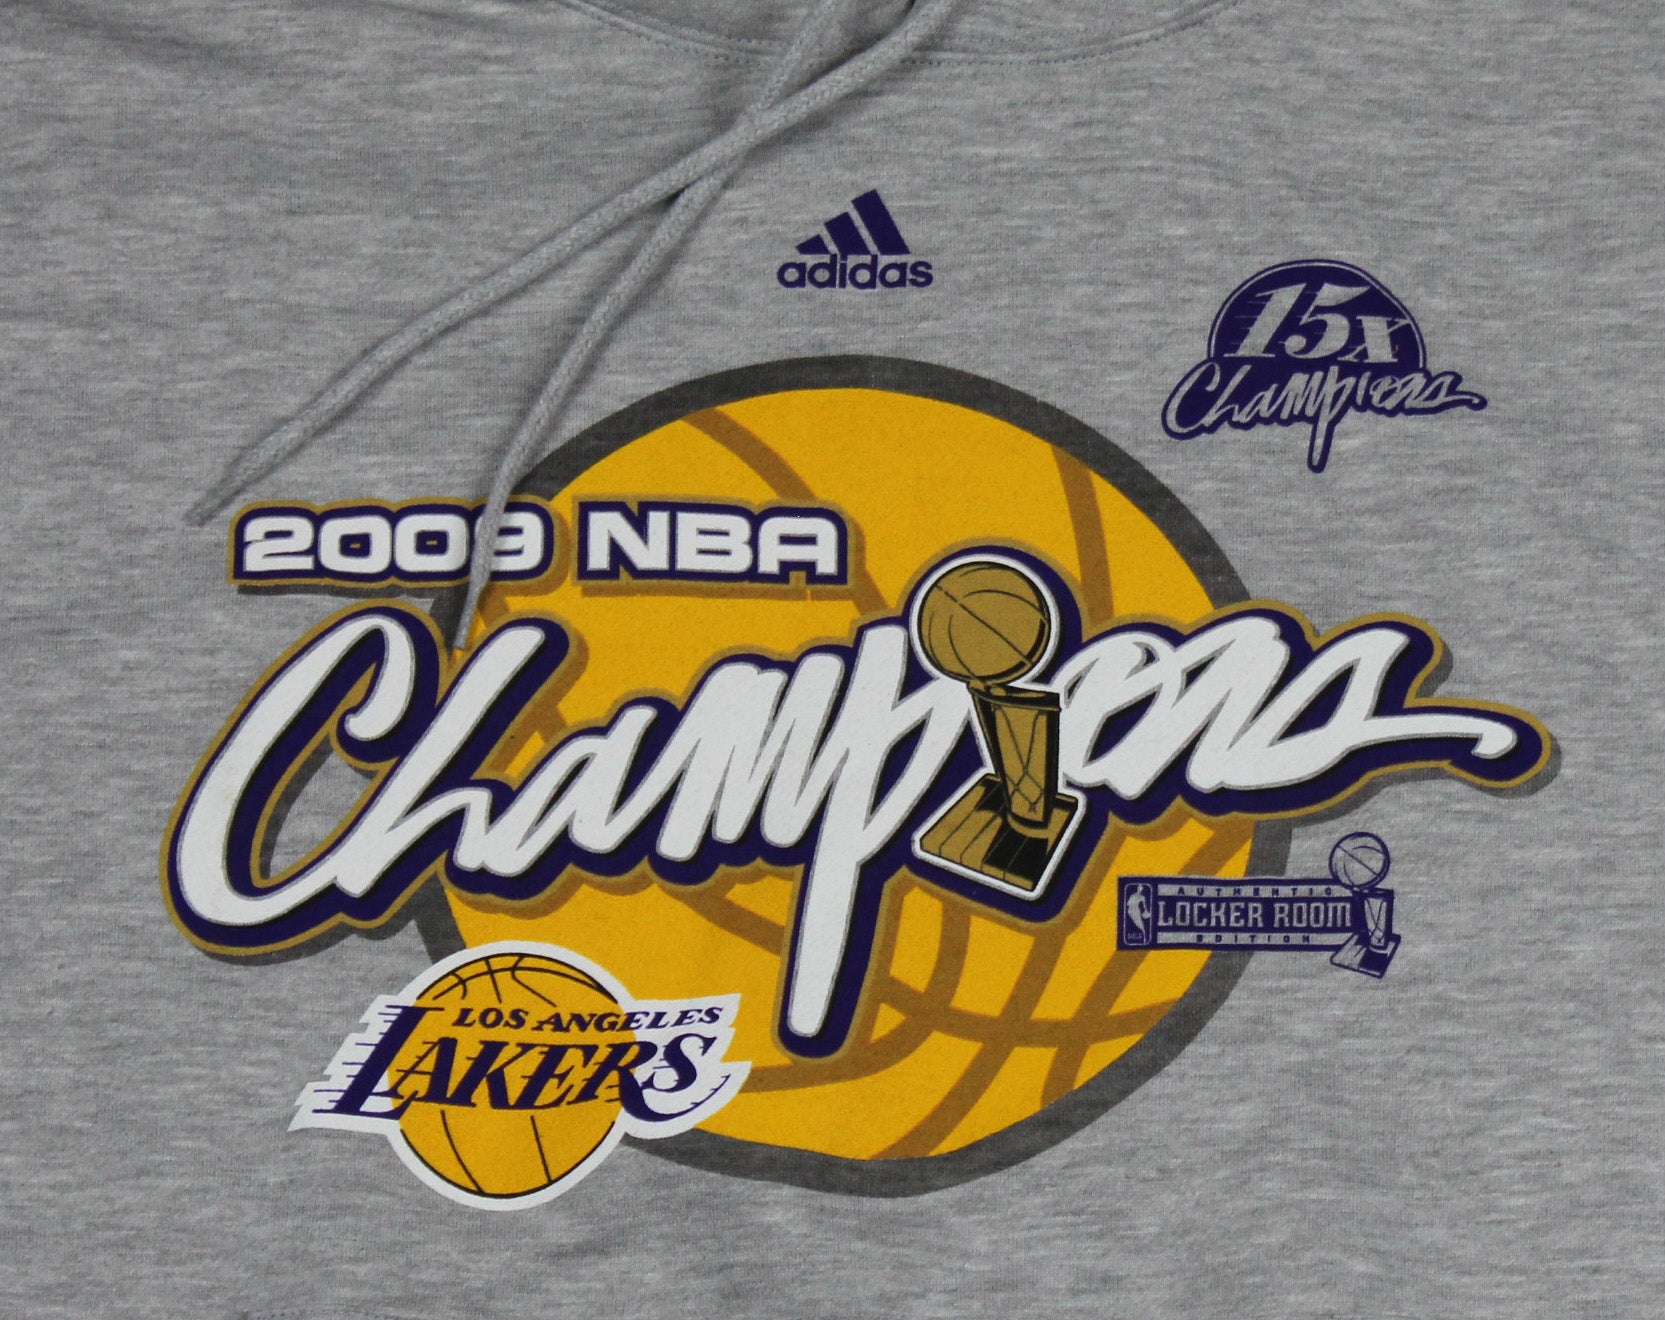 Adidas Men's Los Angeles Lakers NBA Basketball 2009 Champions